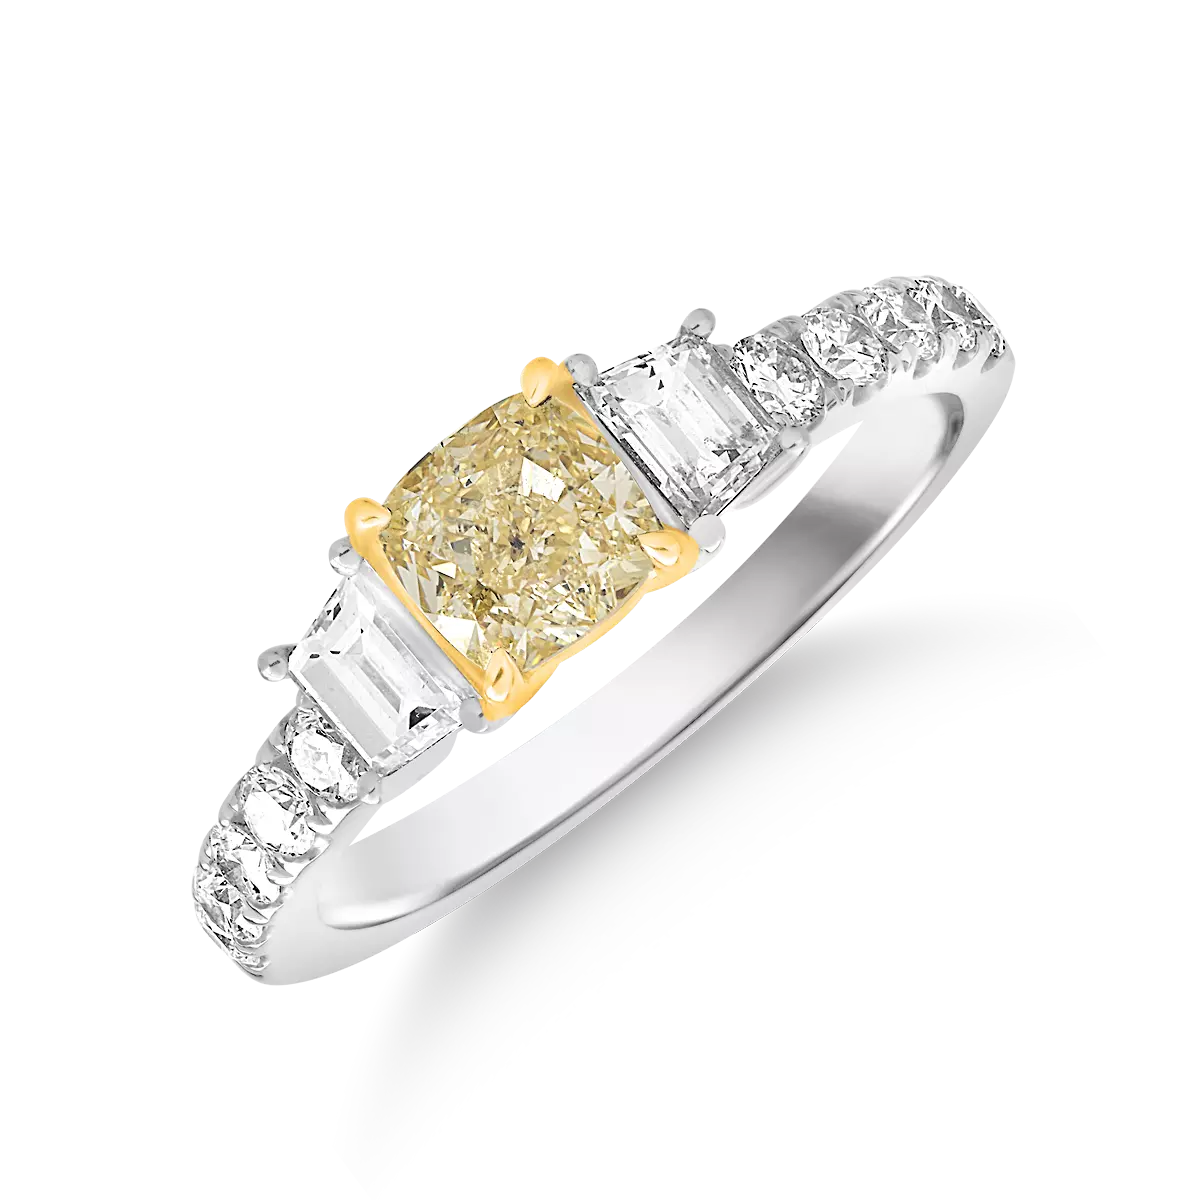 Eljegyzési gyűrű 18K-os fehér aranyból 1ct sárga gyémánttal és 0,48ct gyémánttal. Gramm: 4,35